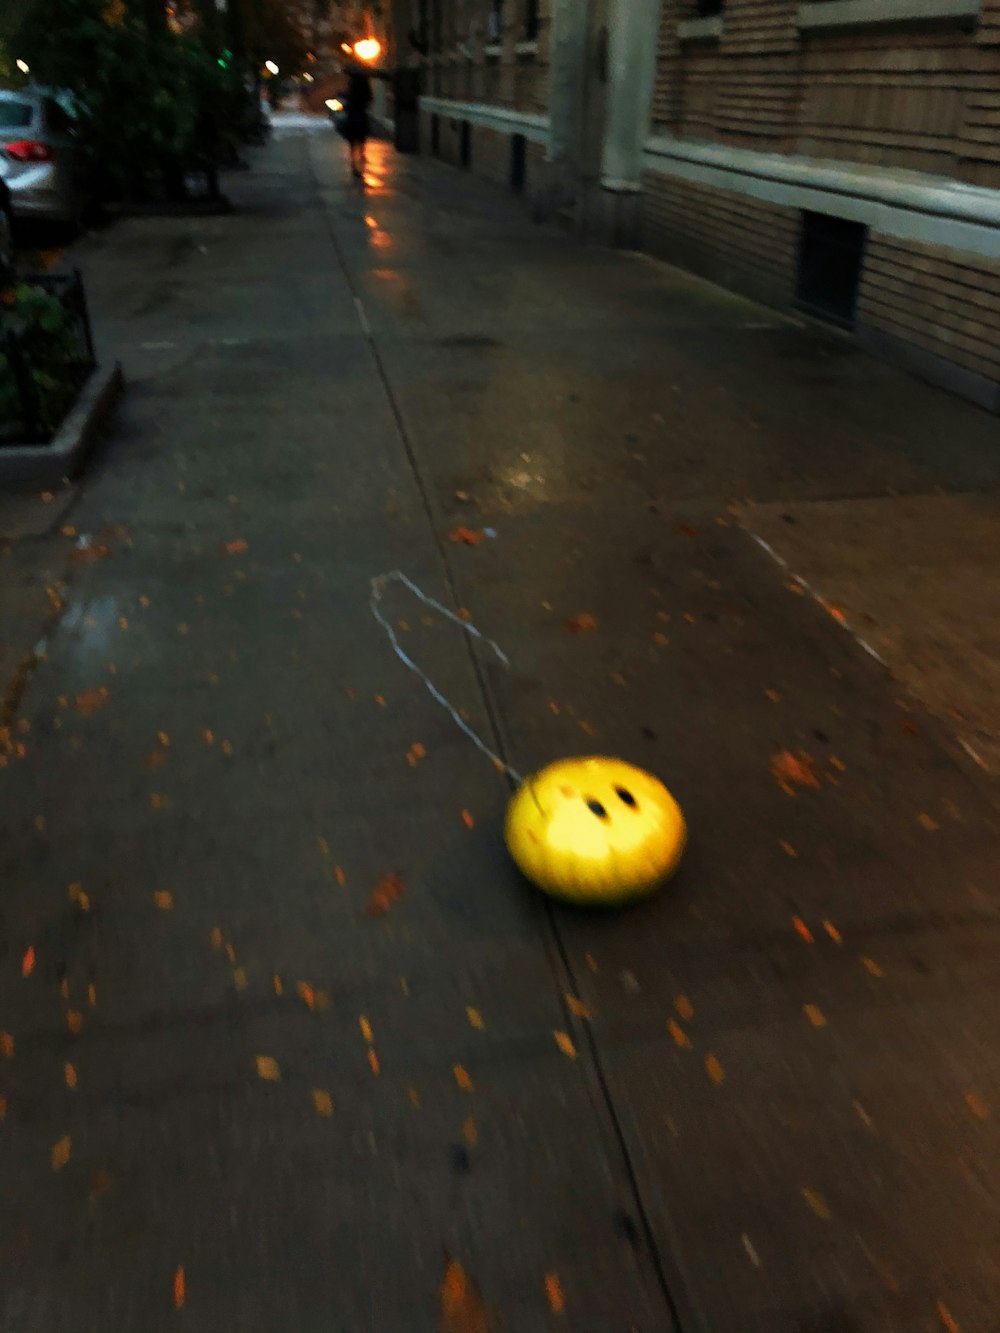 yellow round fruit on gray concrete floor